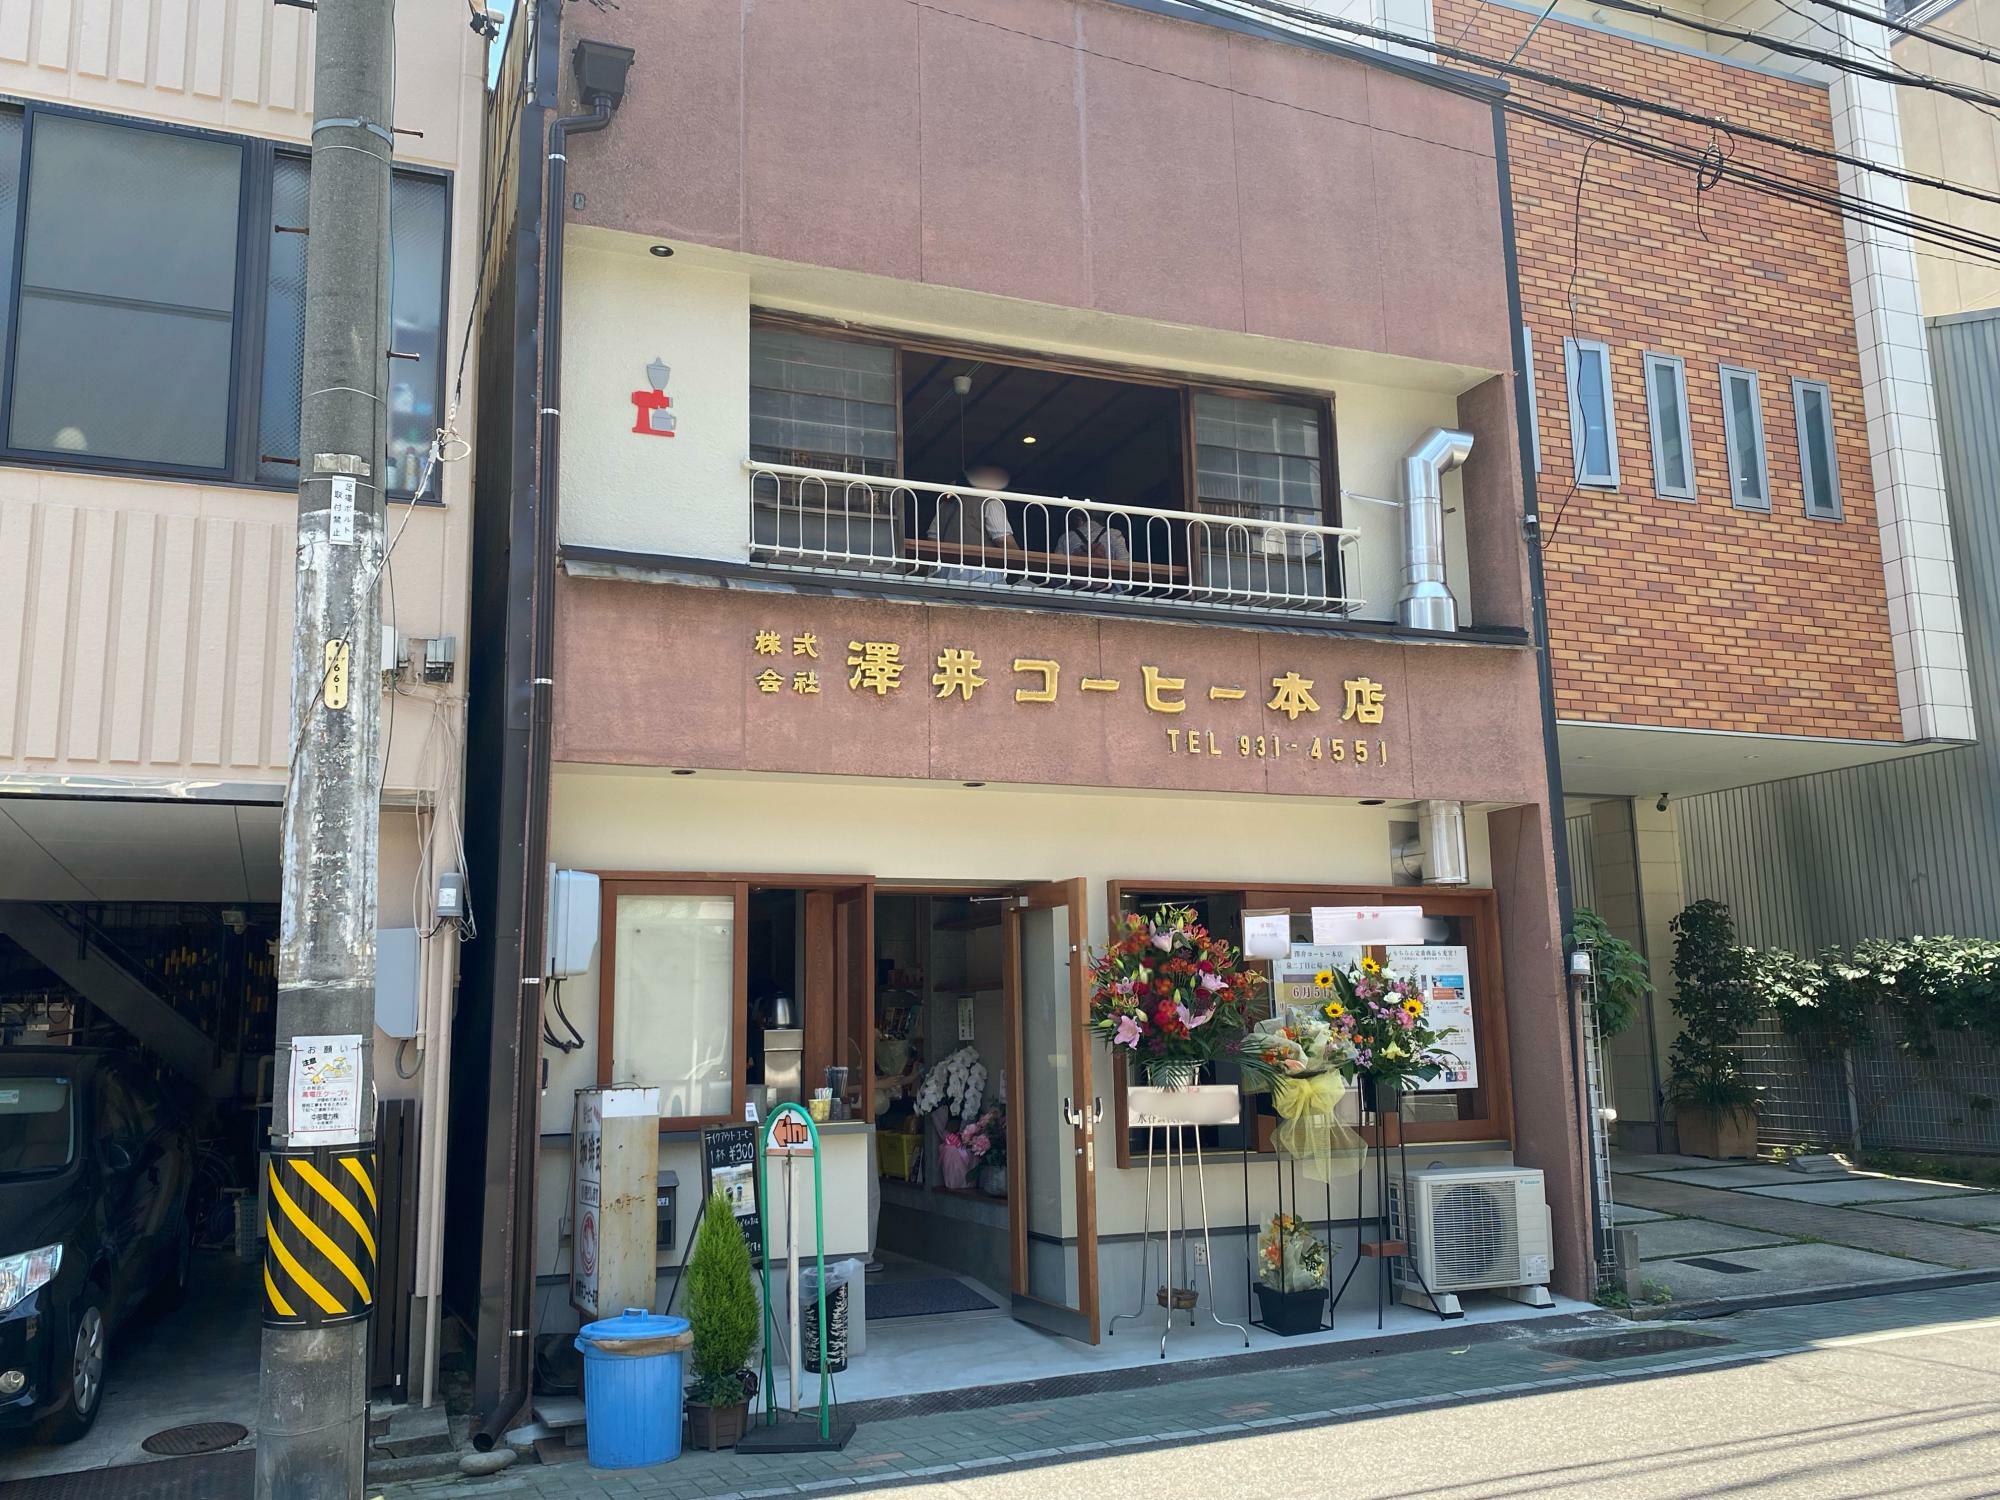 昔の面影を残しつつ、リノベーションされた「澤井コーヒー本店」